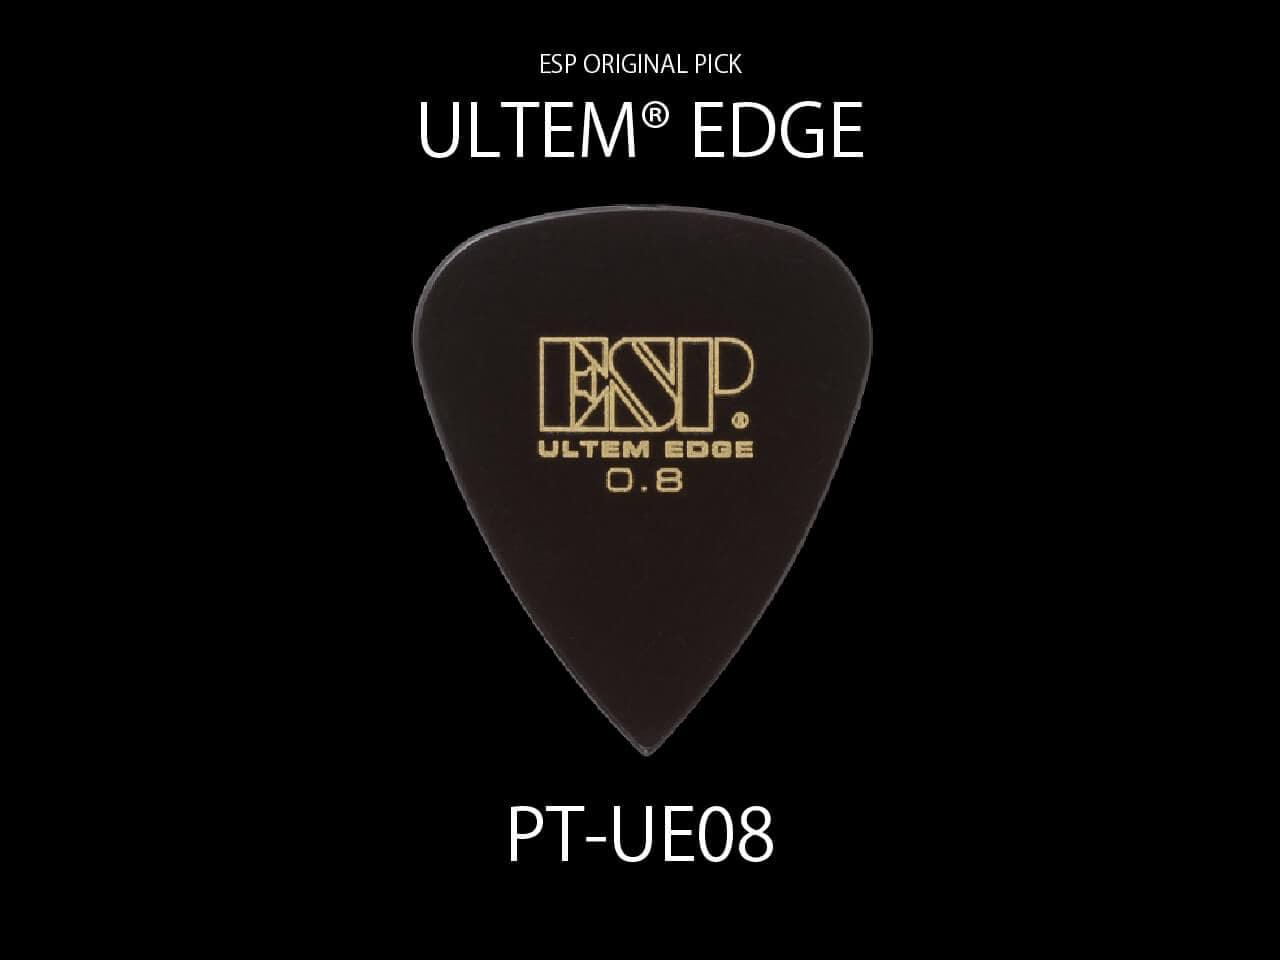 ESP(イーエスピー) Original Pick Series PT-UE08 / ULTEM® EDGE